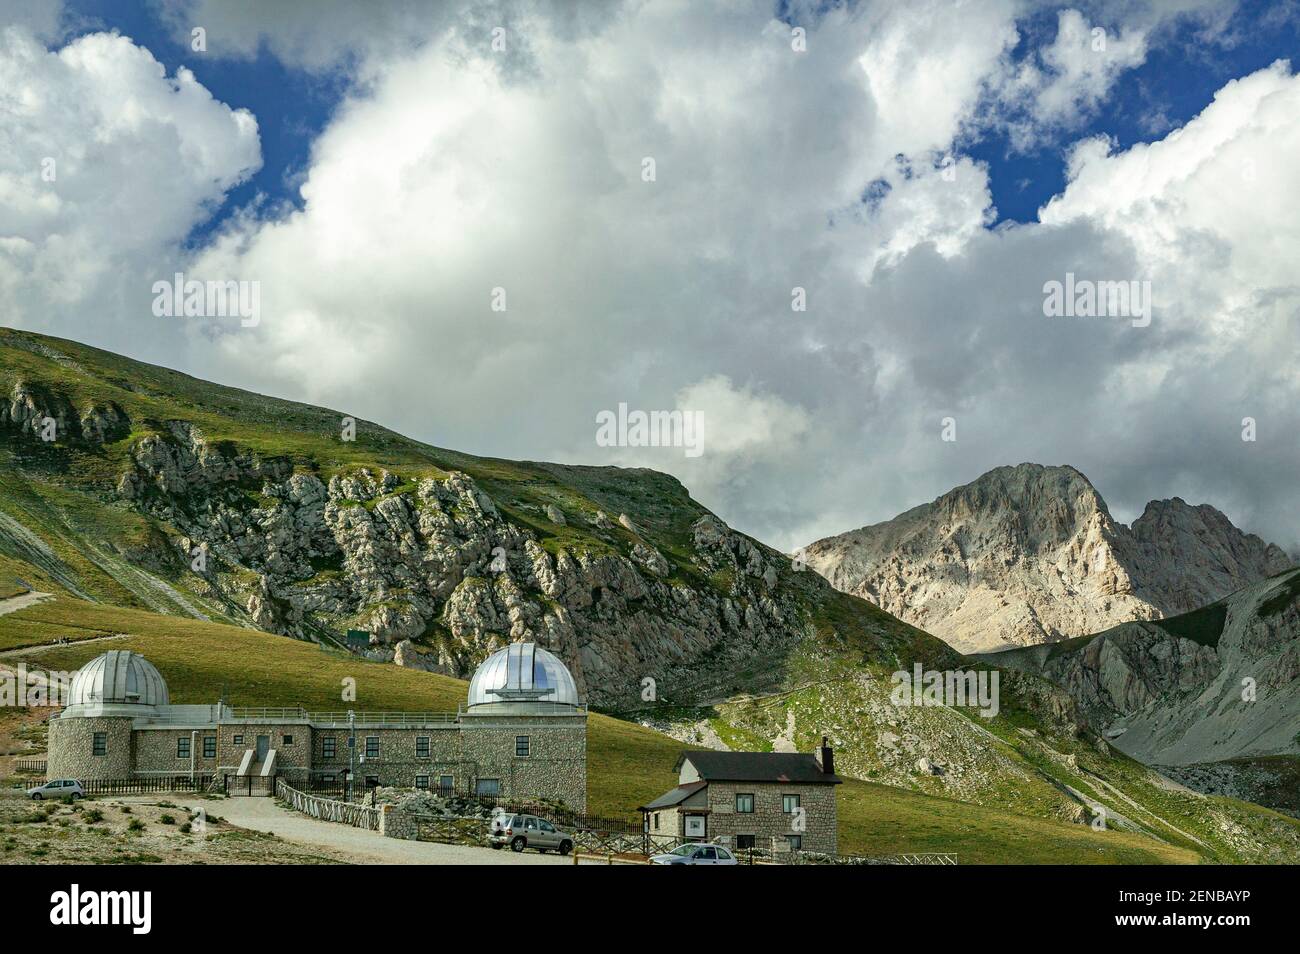 Osservatorio astronomico di campo Imperatore nel Parco Nazionale del Gran Sasso e dei Monti della Laga. Il Corno Grande è illuminato sullo sfondo. Foto Stock